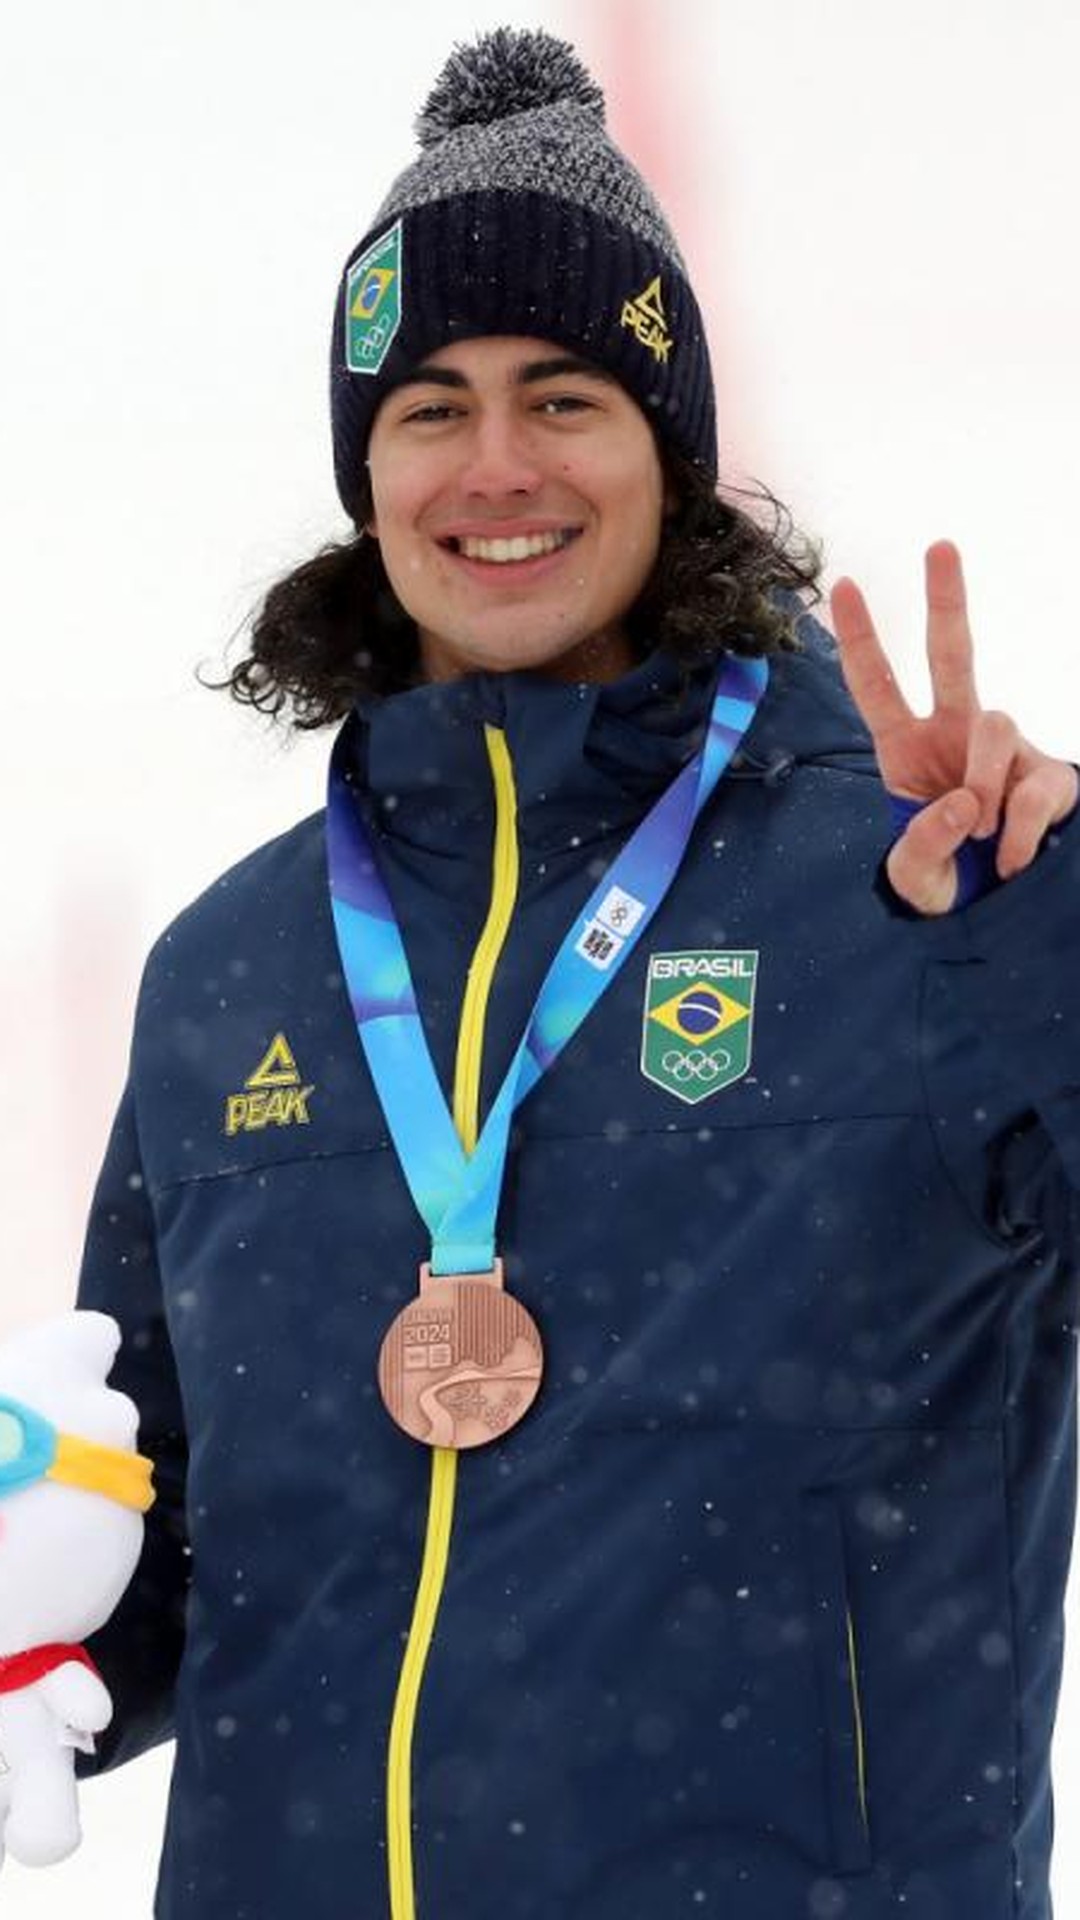 Notícias - De volta ao Brasil, medalhista dos Jogos de Inverno da